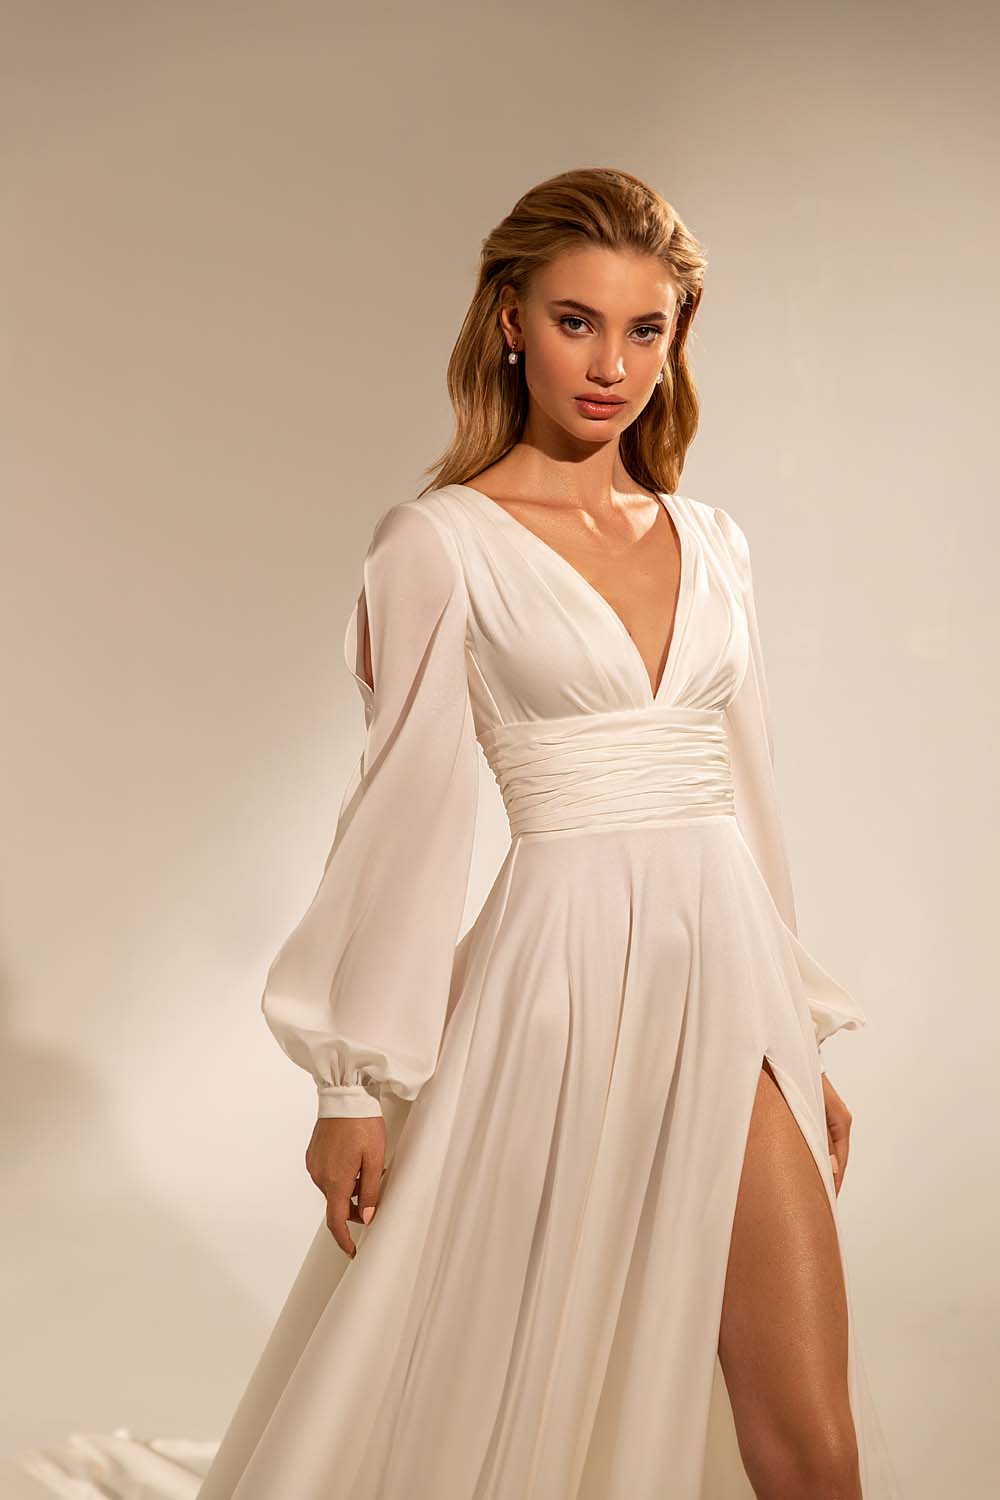 Photoshoot Gown Ash & White